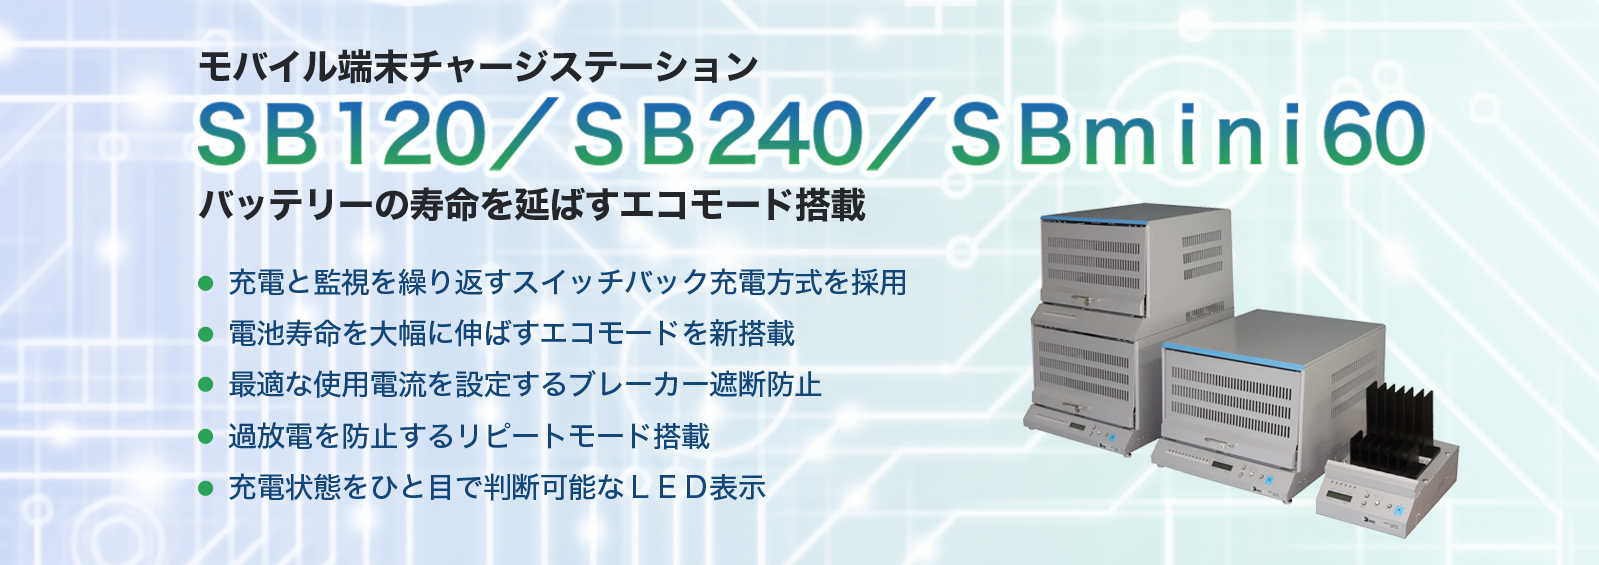 スイッチバック充電システム SB100/200